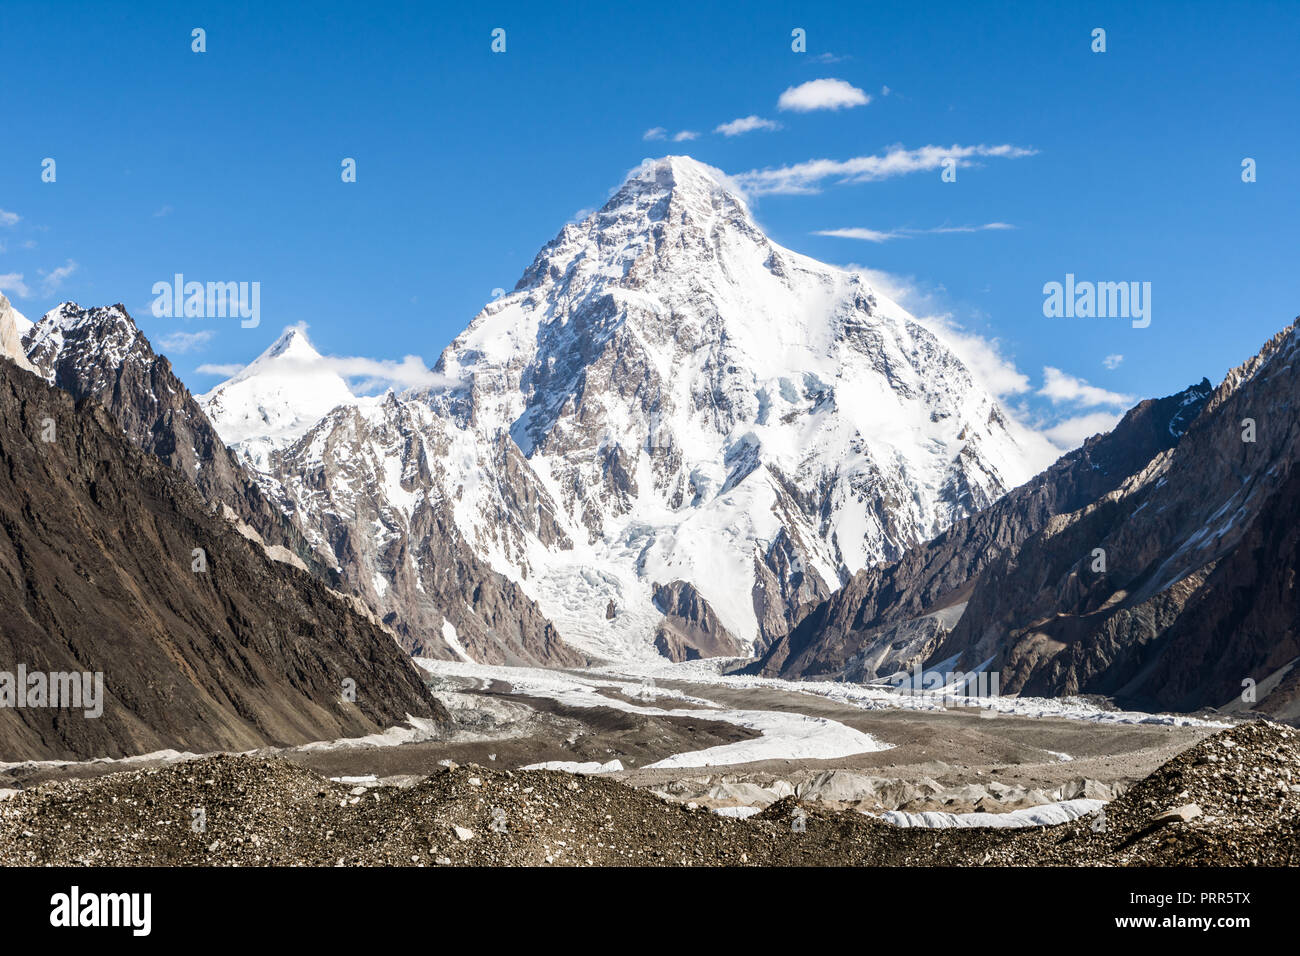 K2 mountain immagini e fotografie stock ad alta risoluzione - Alamy